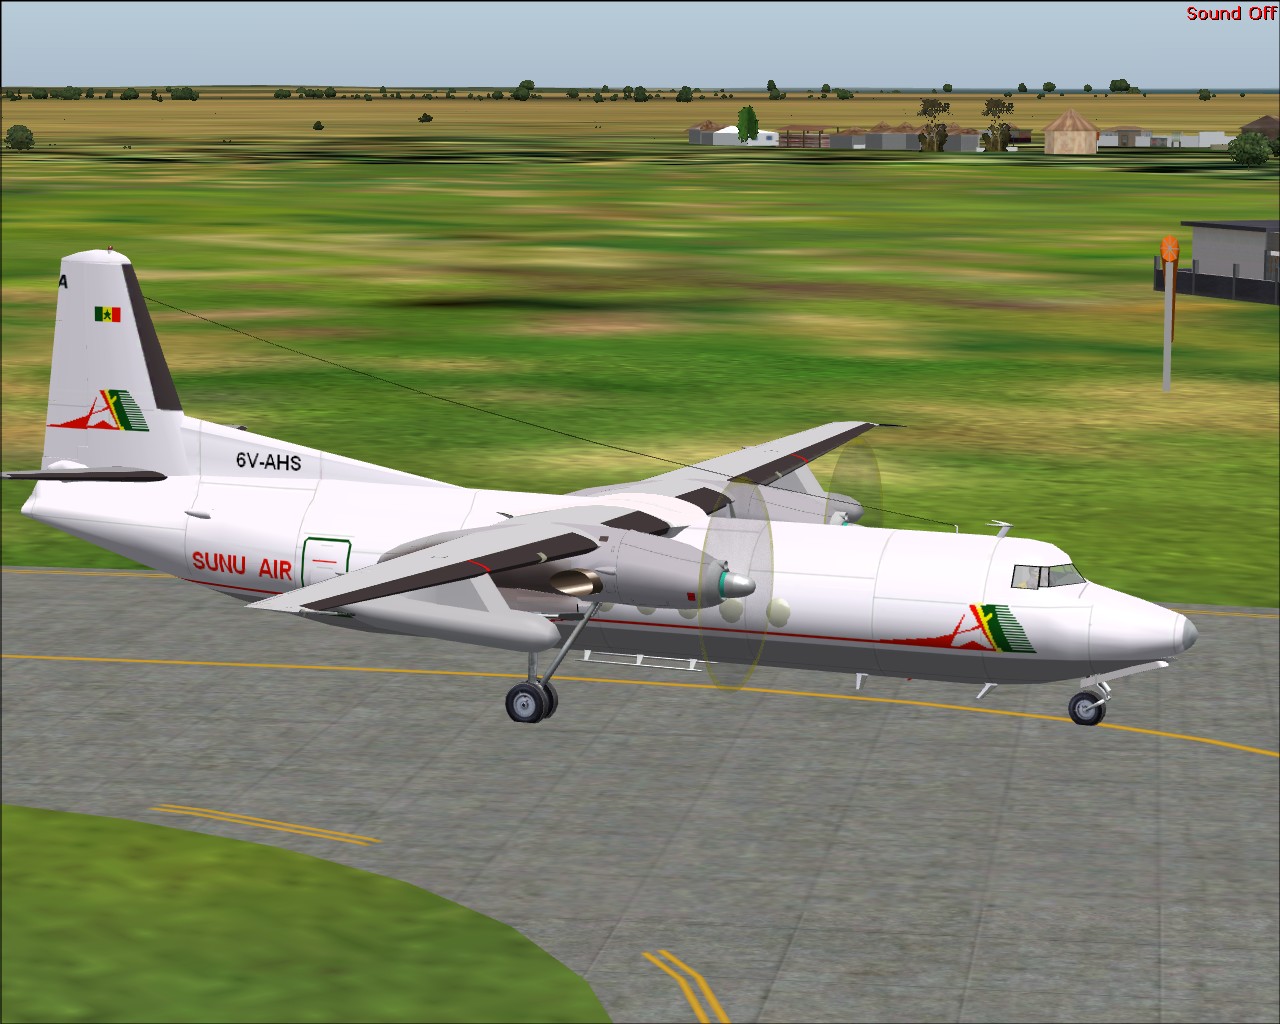 Voici l'avion SuNu Air